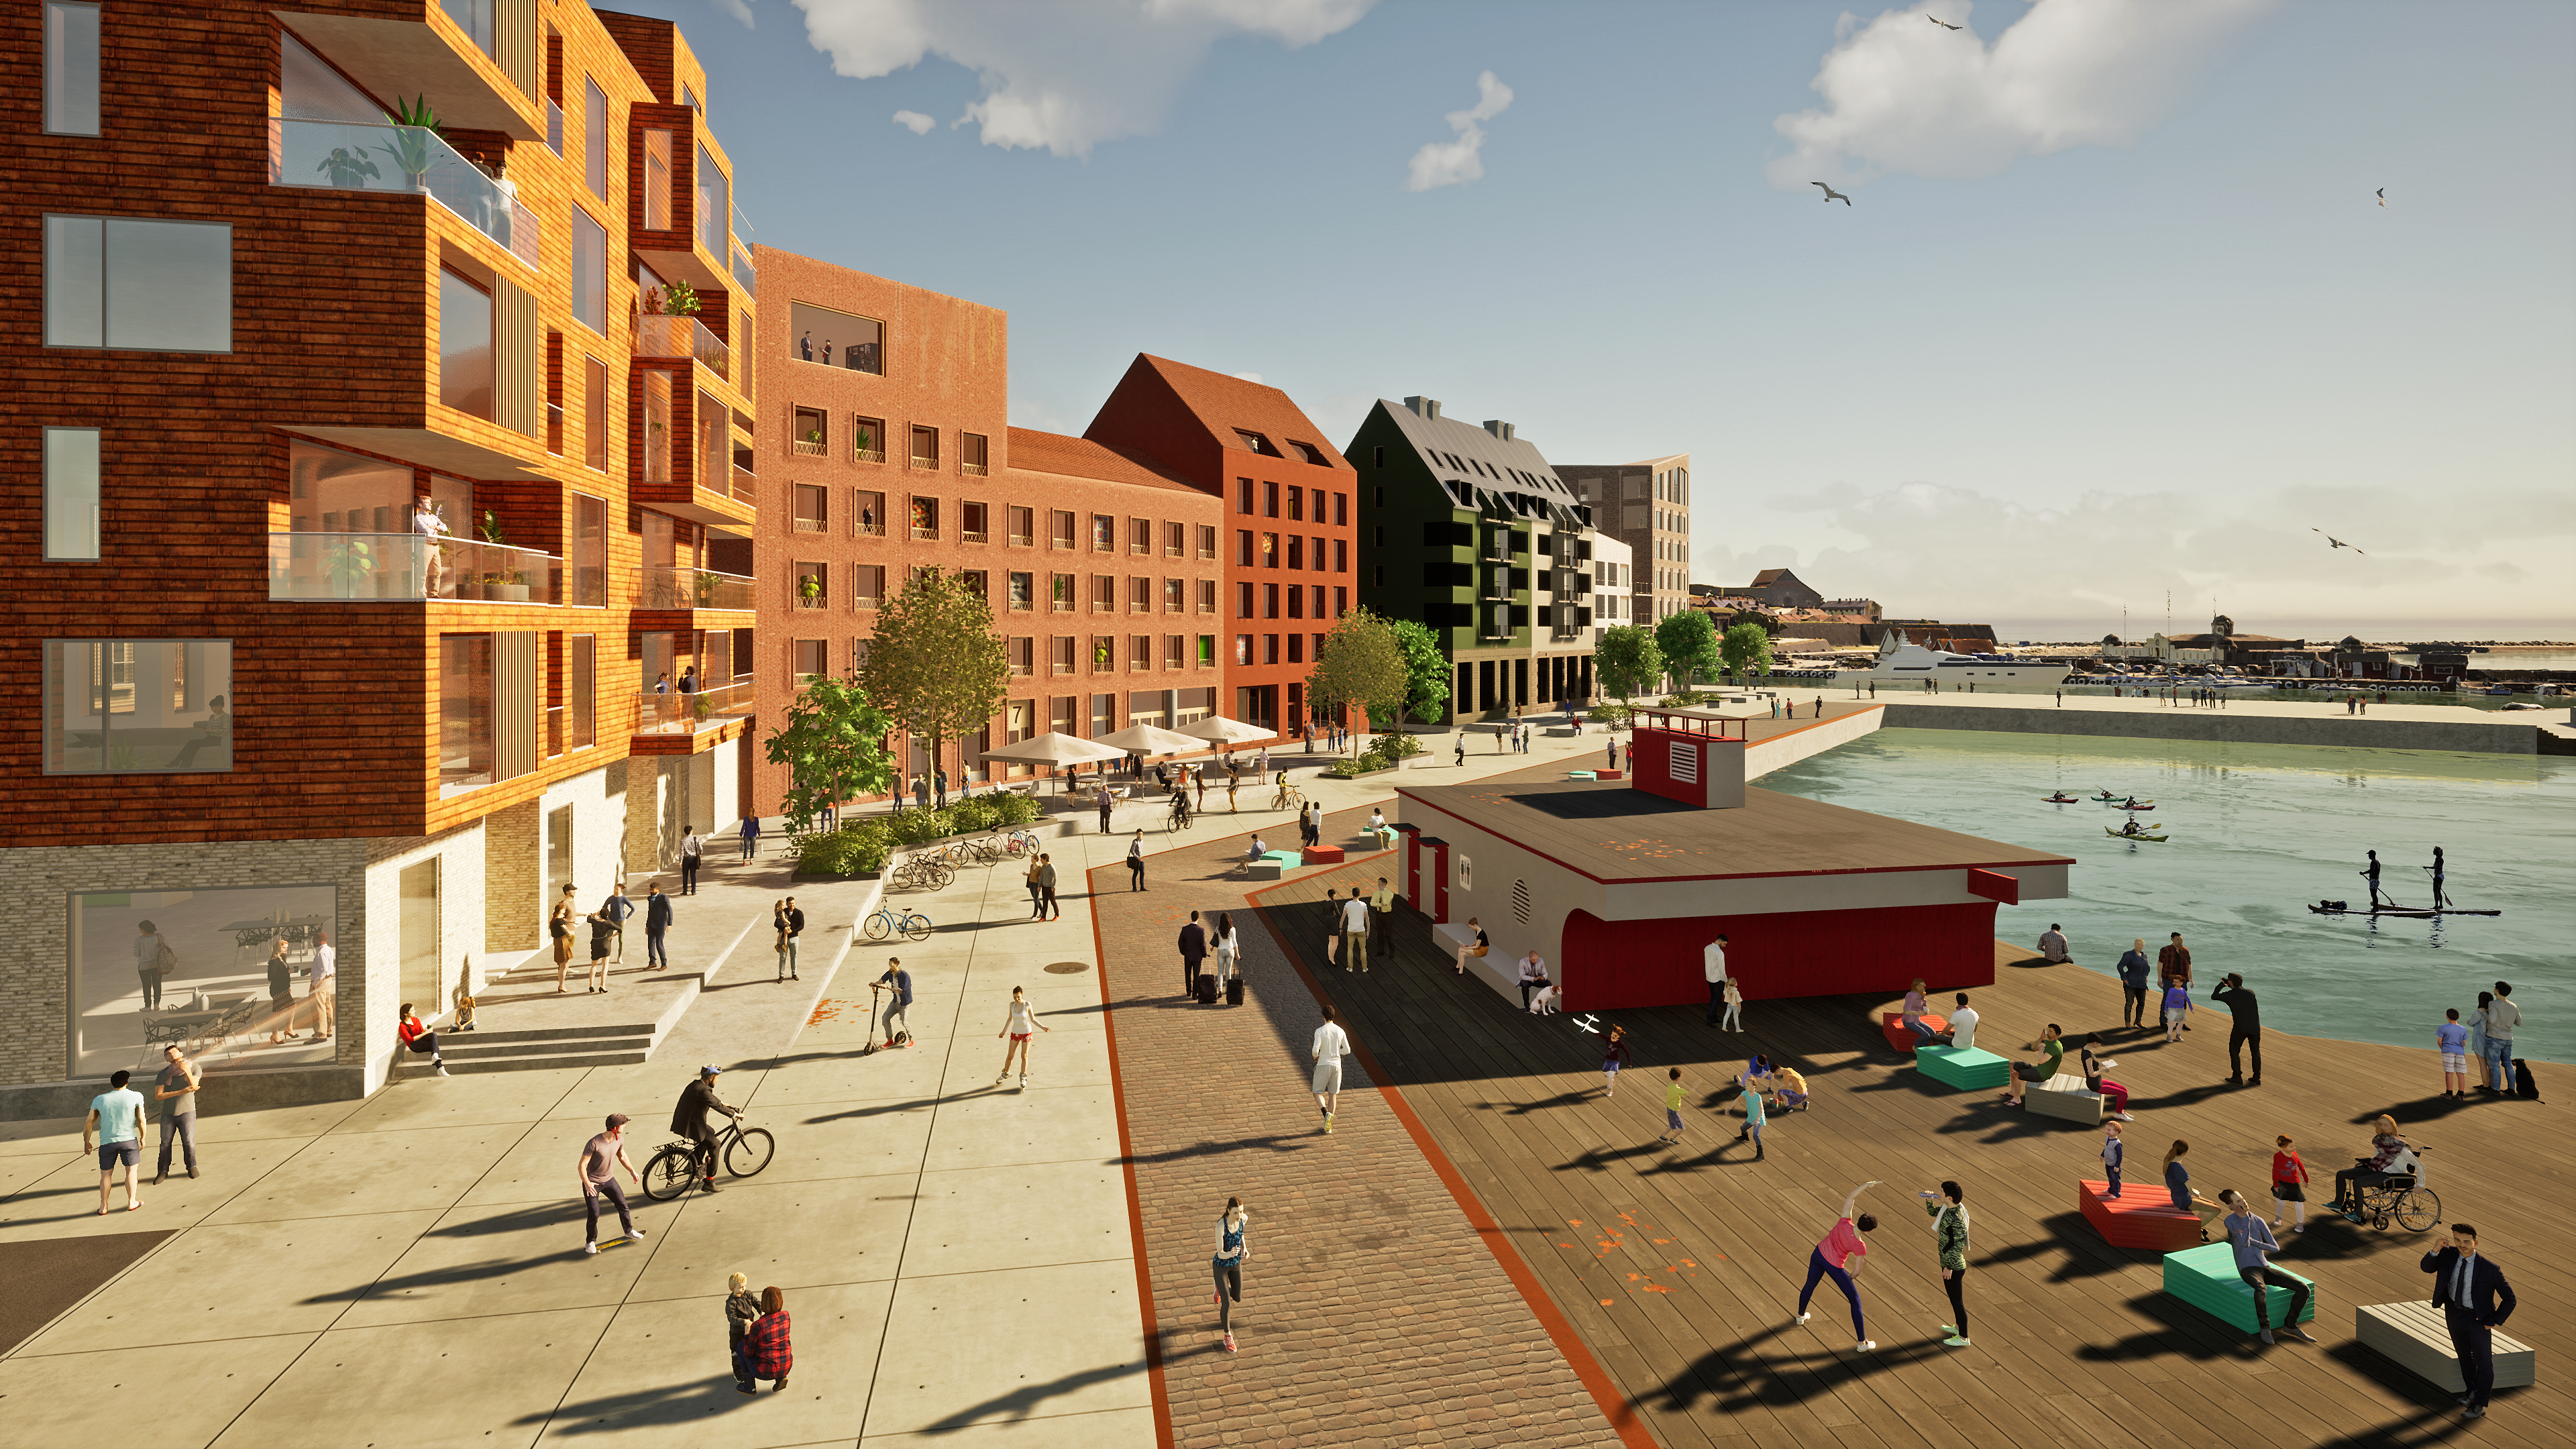 illustration över stadsdel med hamnkaj